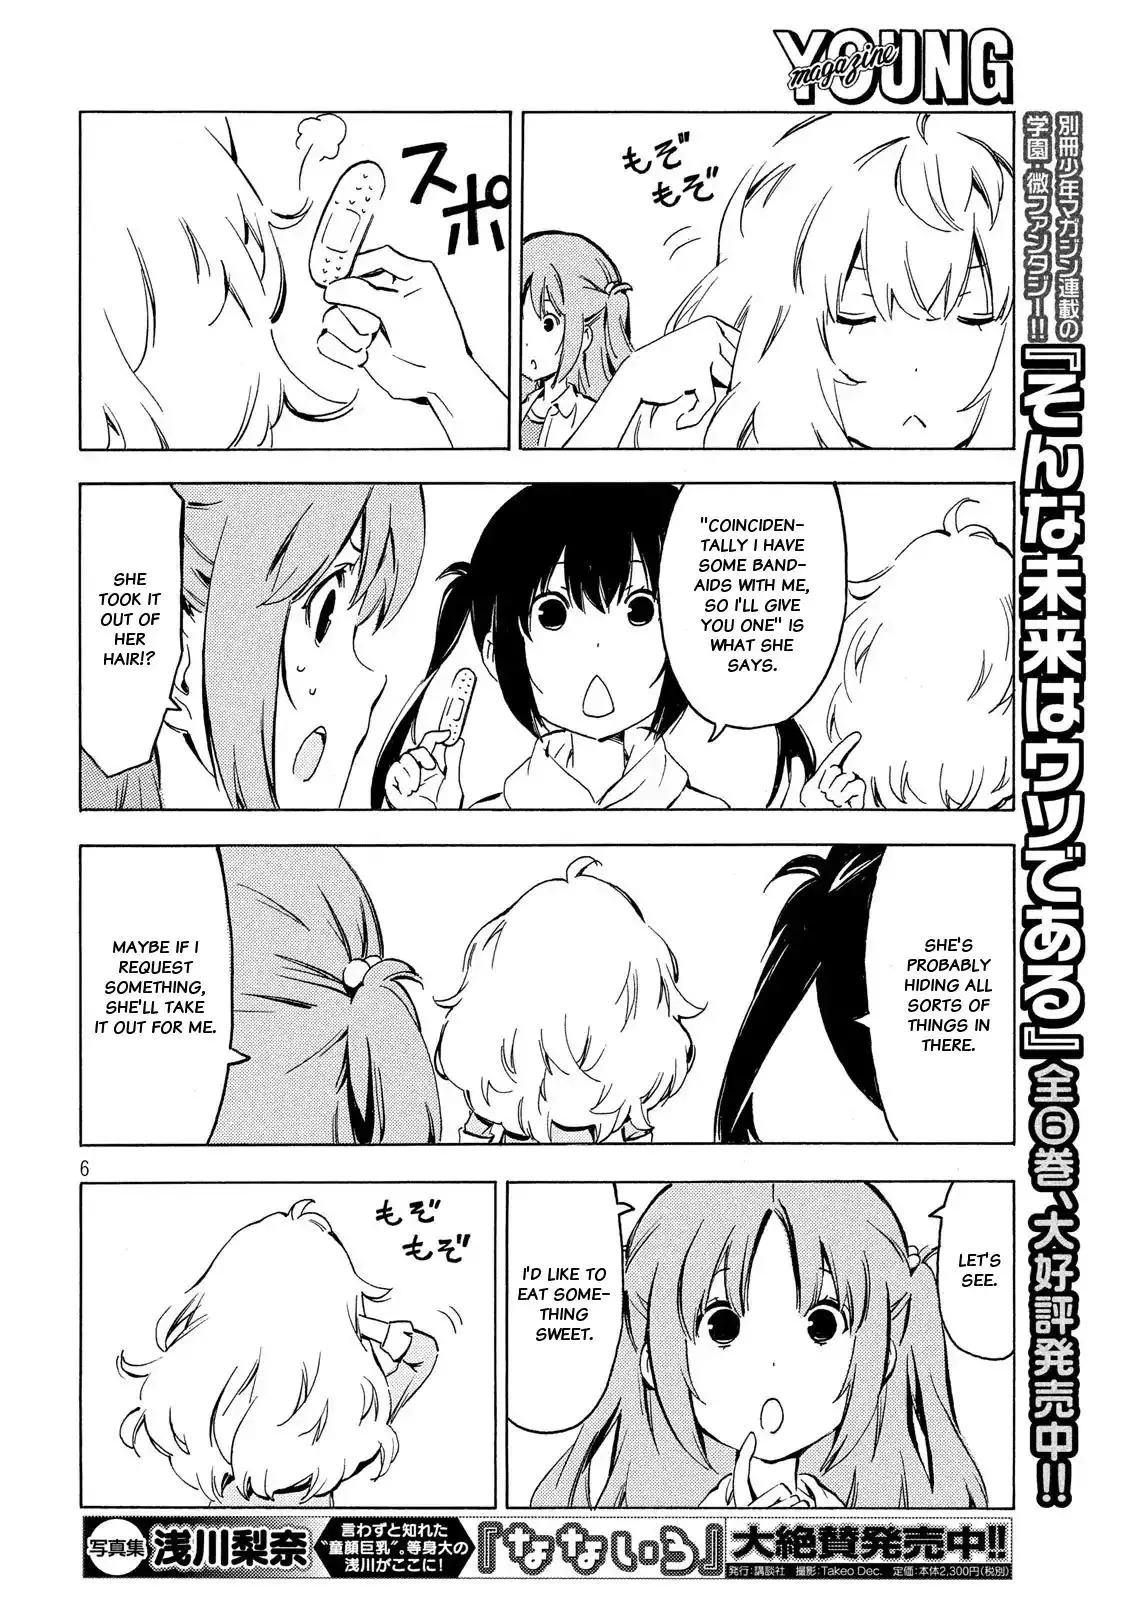 Minami-ke - 337 page 5